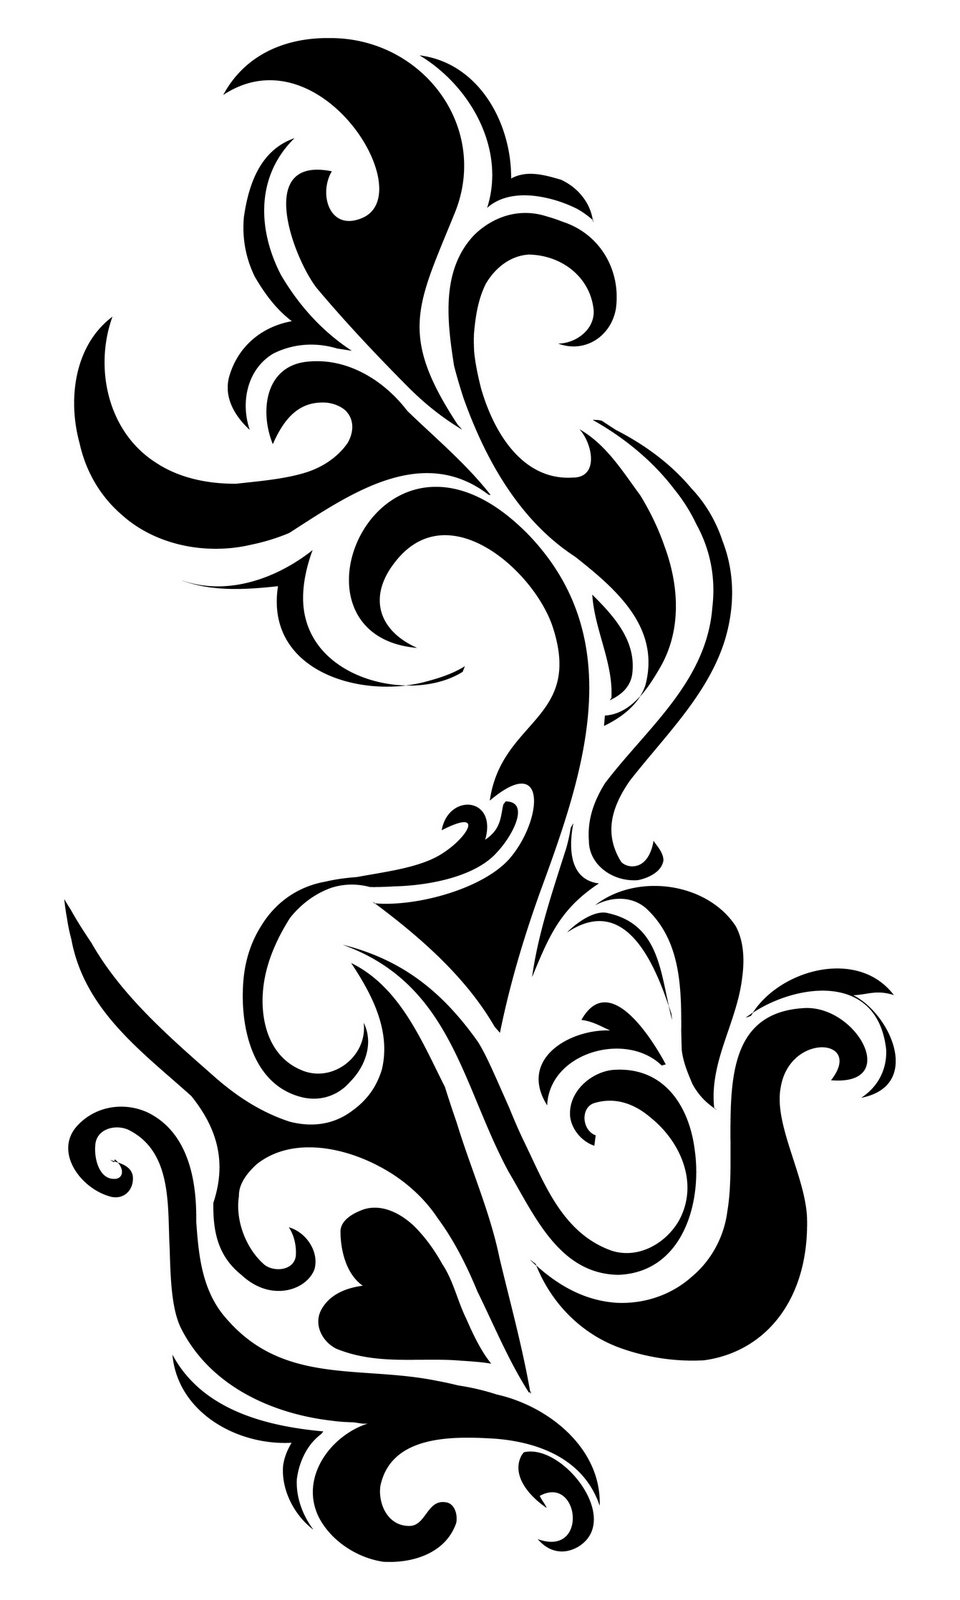 Free Tribal Tattoo Design - Dragon Tattoos